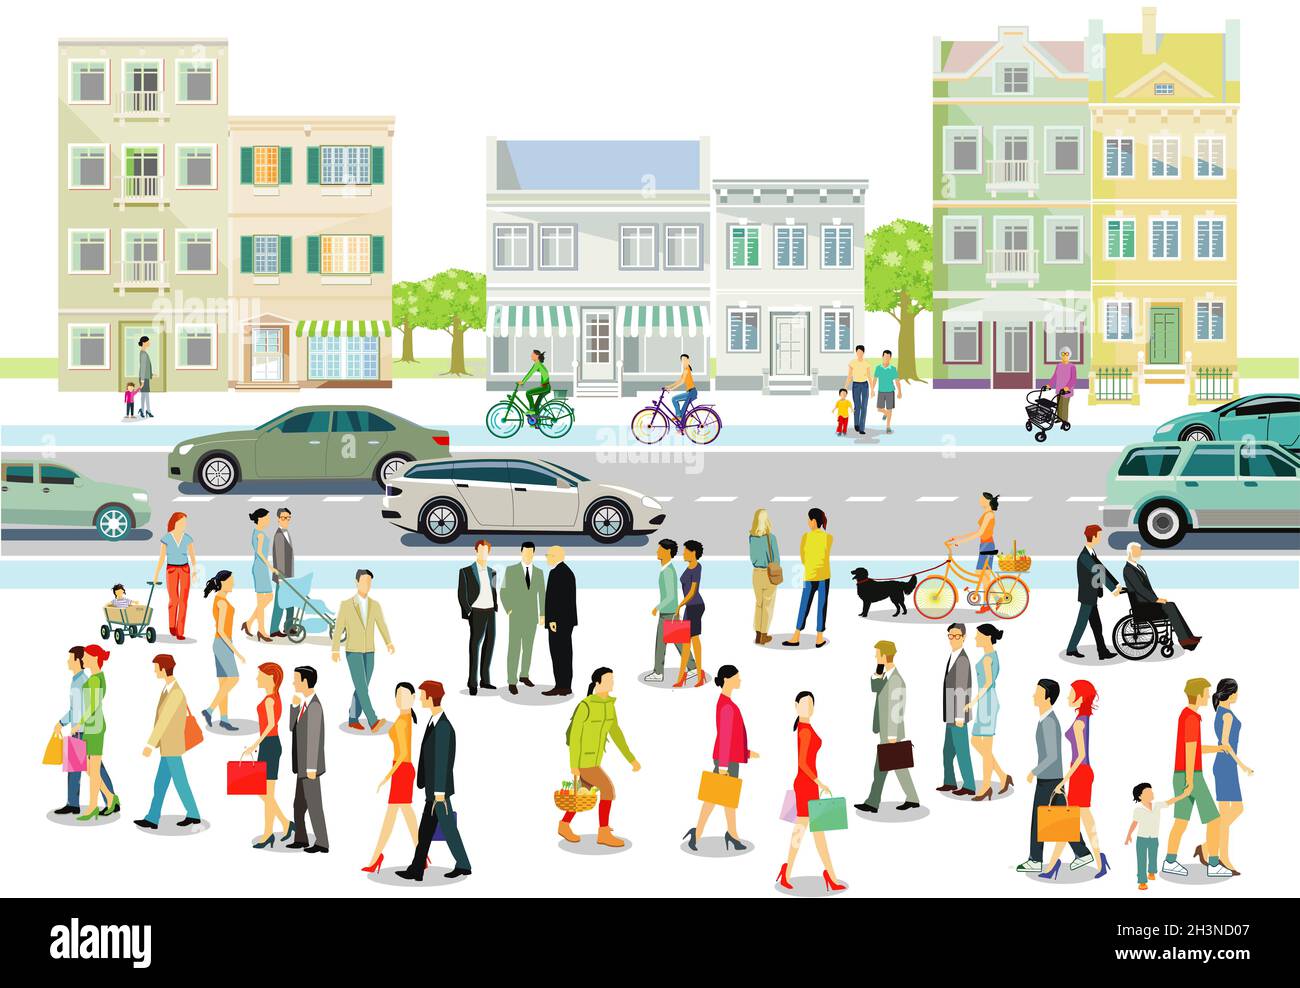 Ville avec des gens et la circulation routière, illustration Banque D'Images